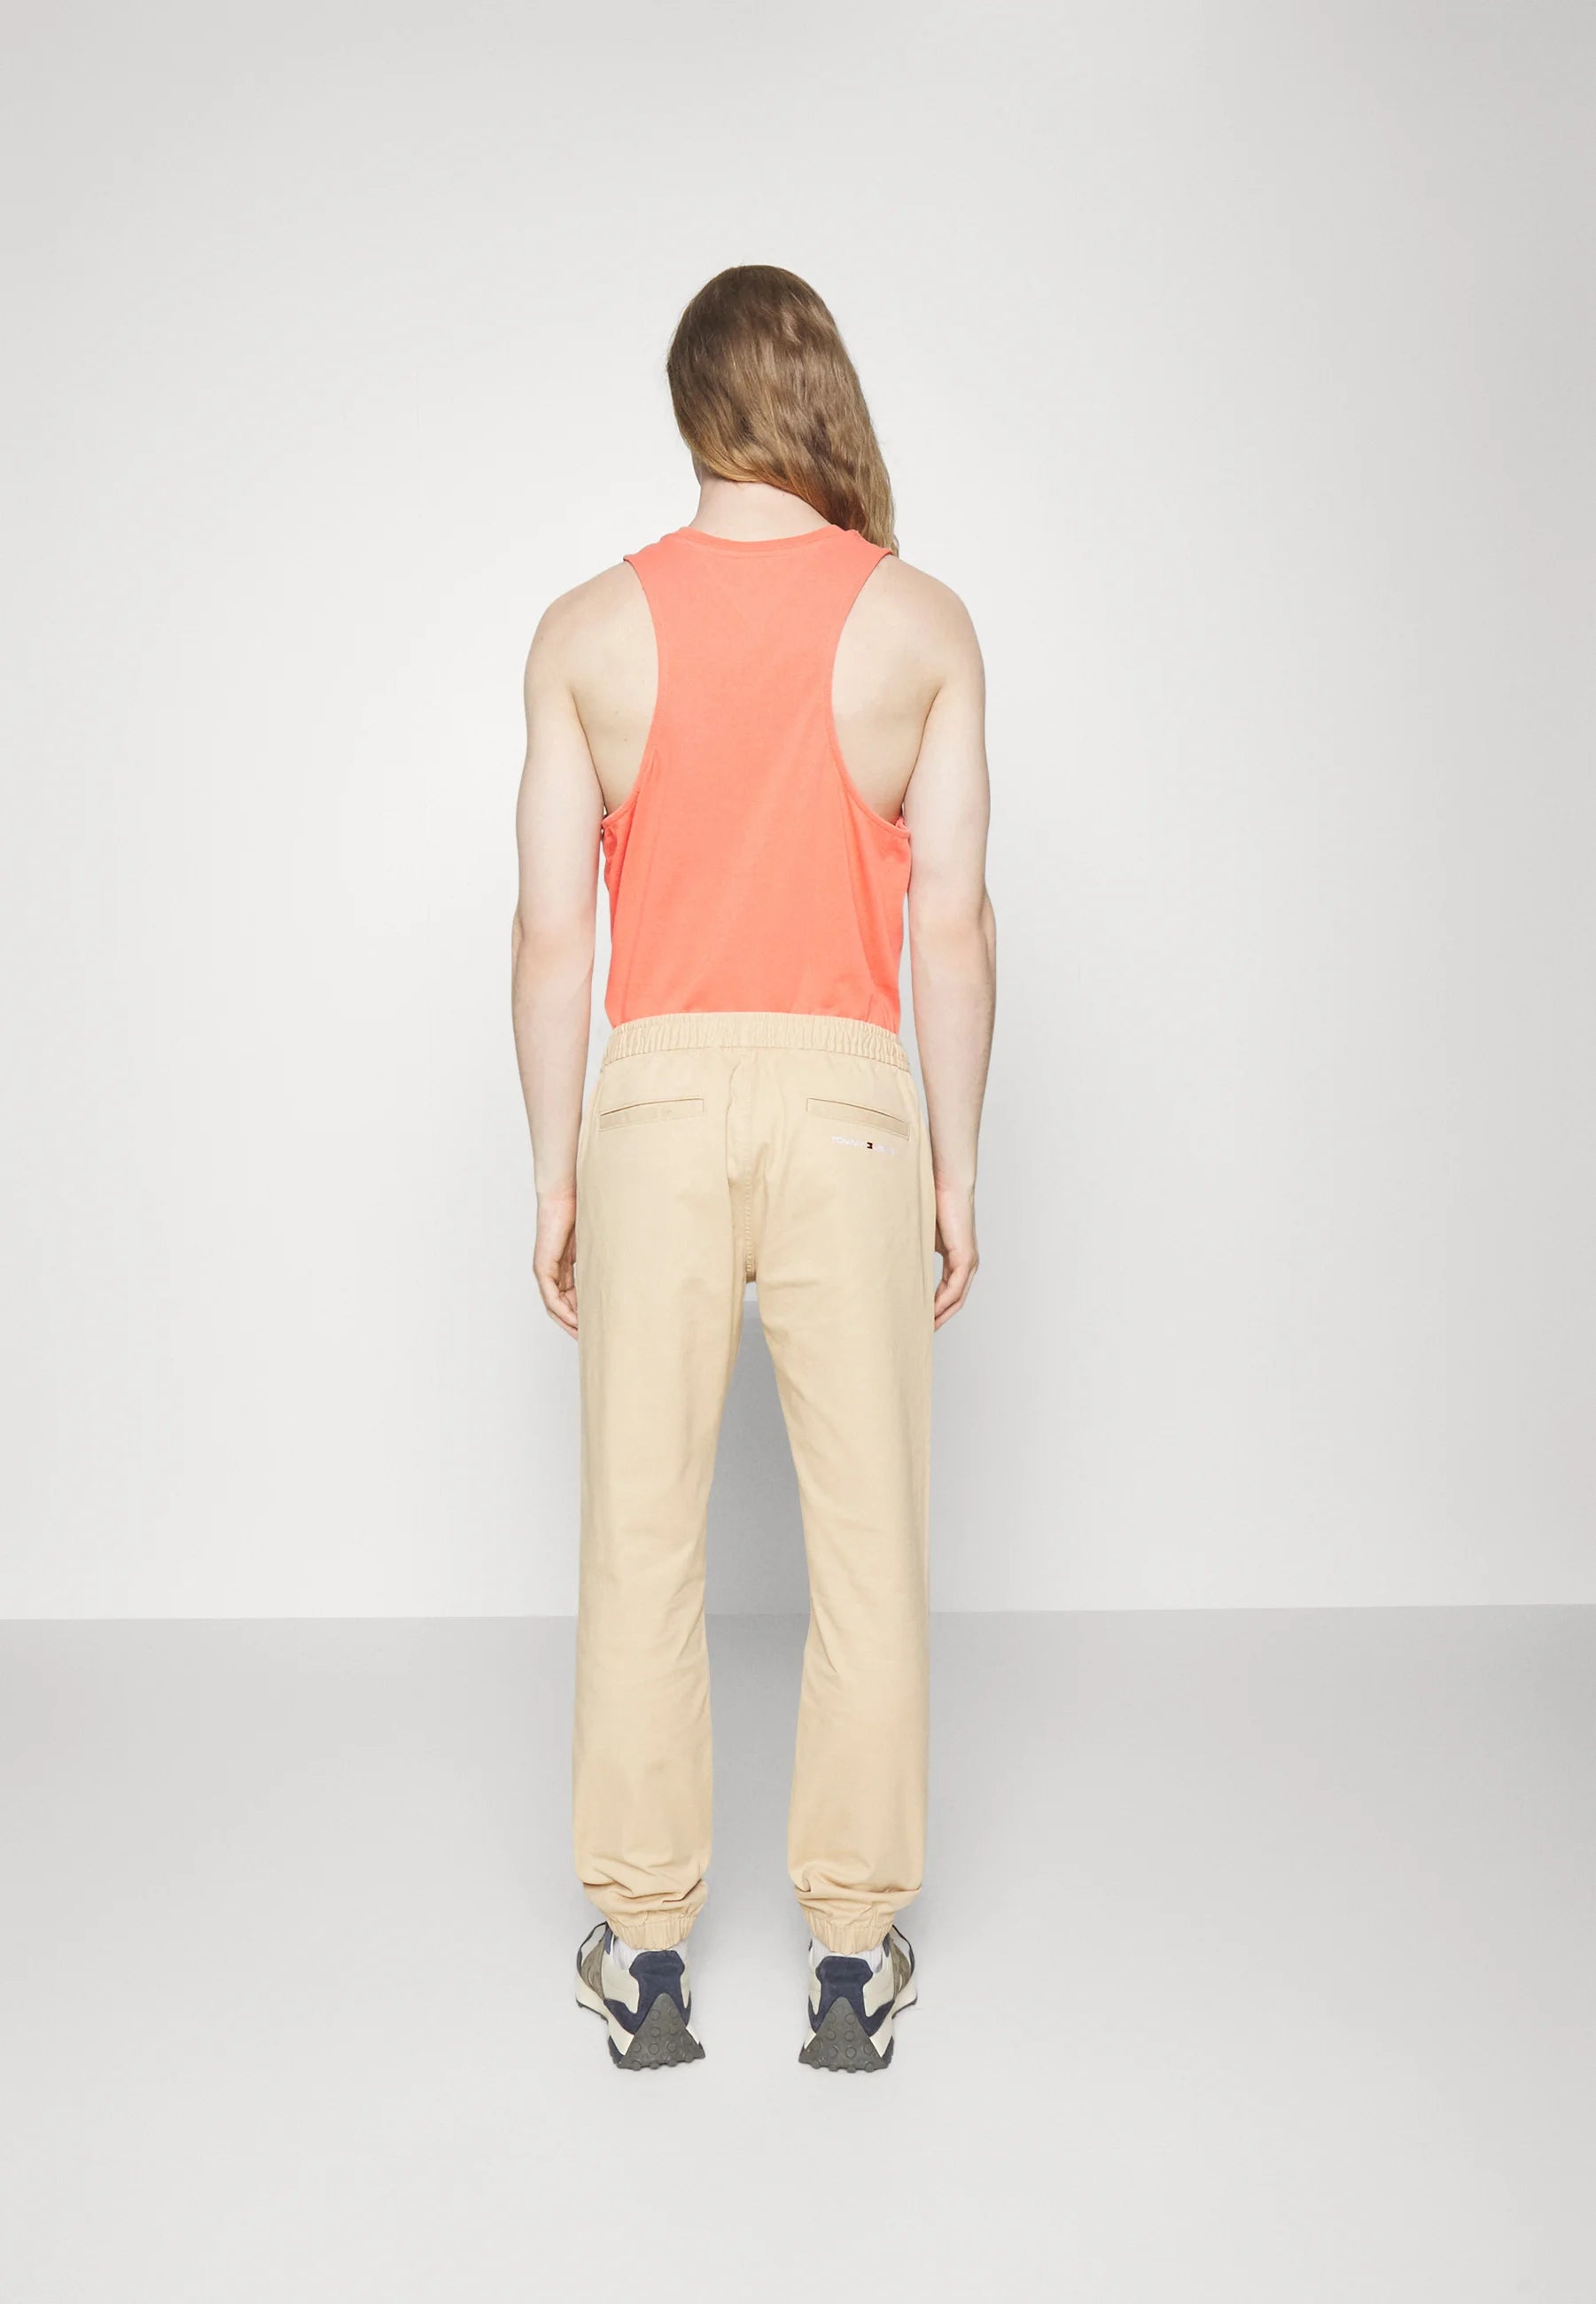 Pantalon de jogging homme Tommy Jeans beige en coton bio I Georgespaul